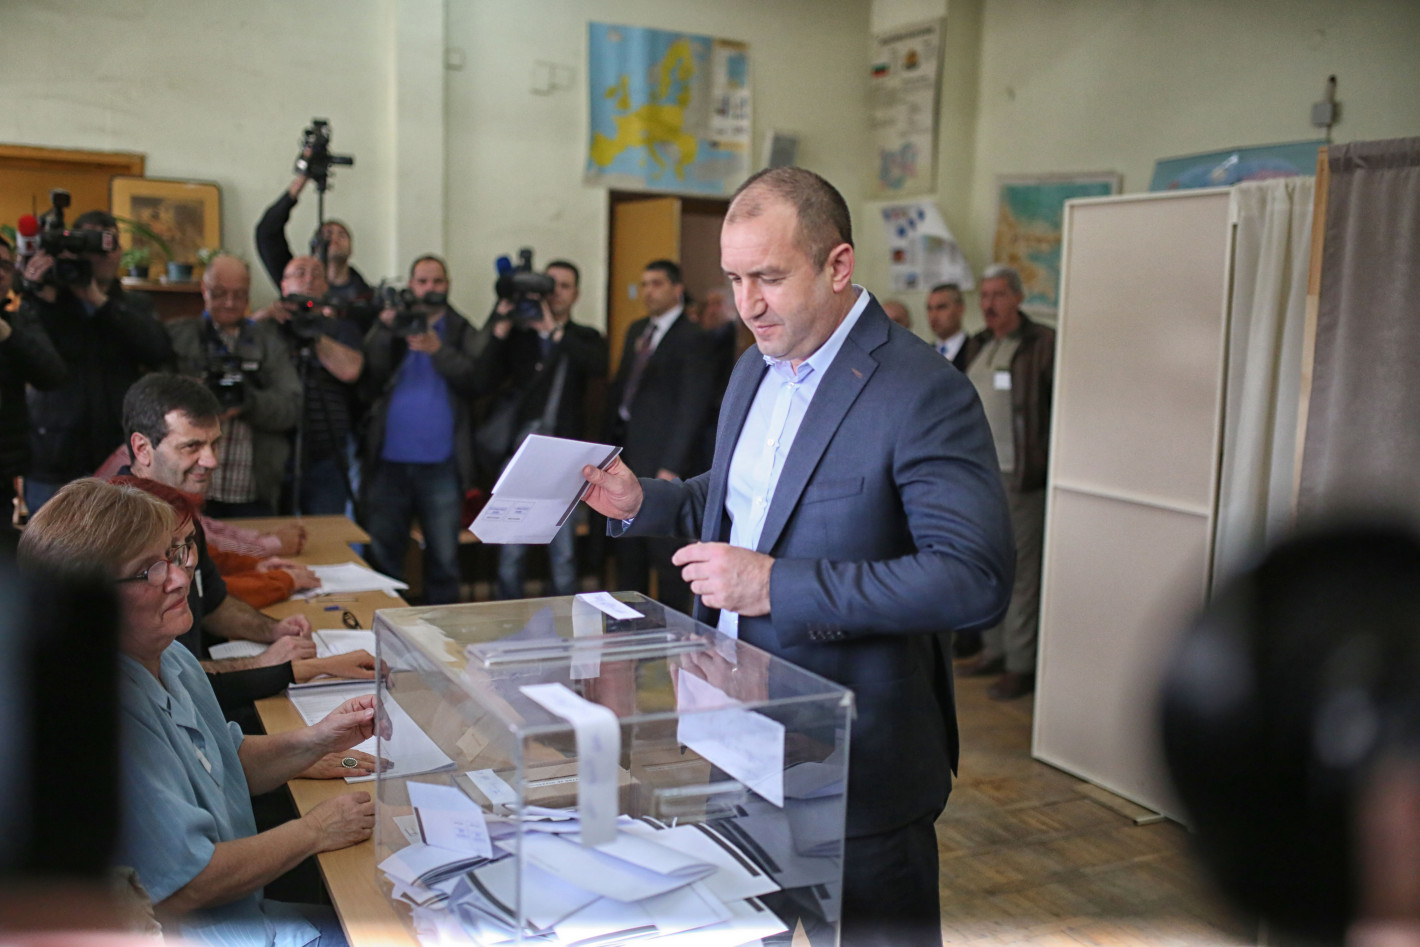 Бойко Борисов гласува и отиде да се помоли на Господ (Снимки+как гласуваха другите)